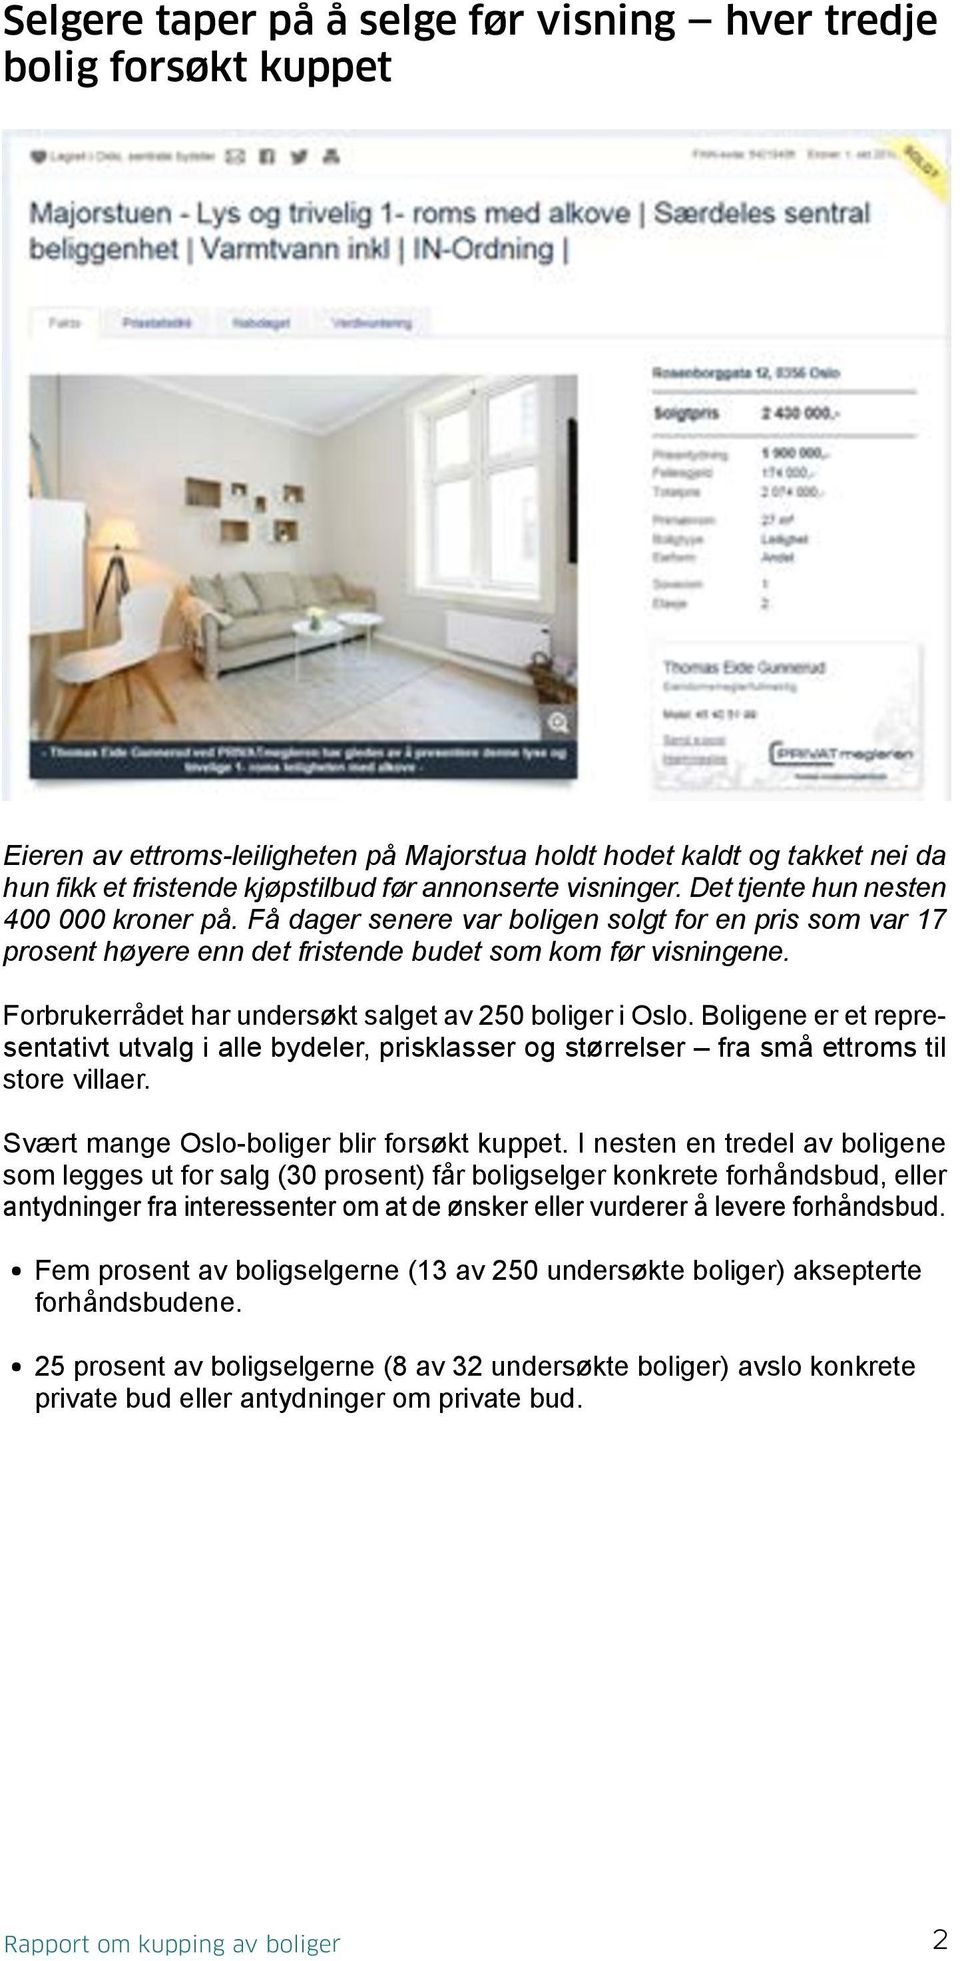 Forbrukerrådet har undersøkt salget av 250 boliger i Oslo. Boligene er et representativt utvalg i alle bydeler, prisklasser og størrelser fra små ettroms til store villaer.